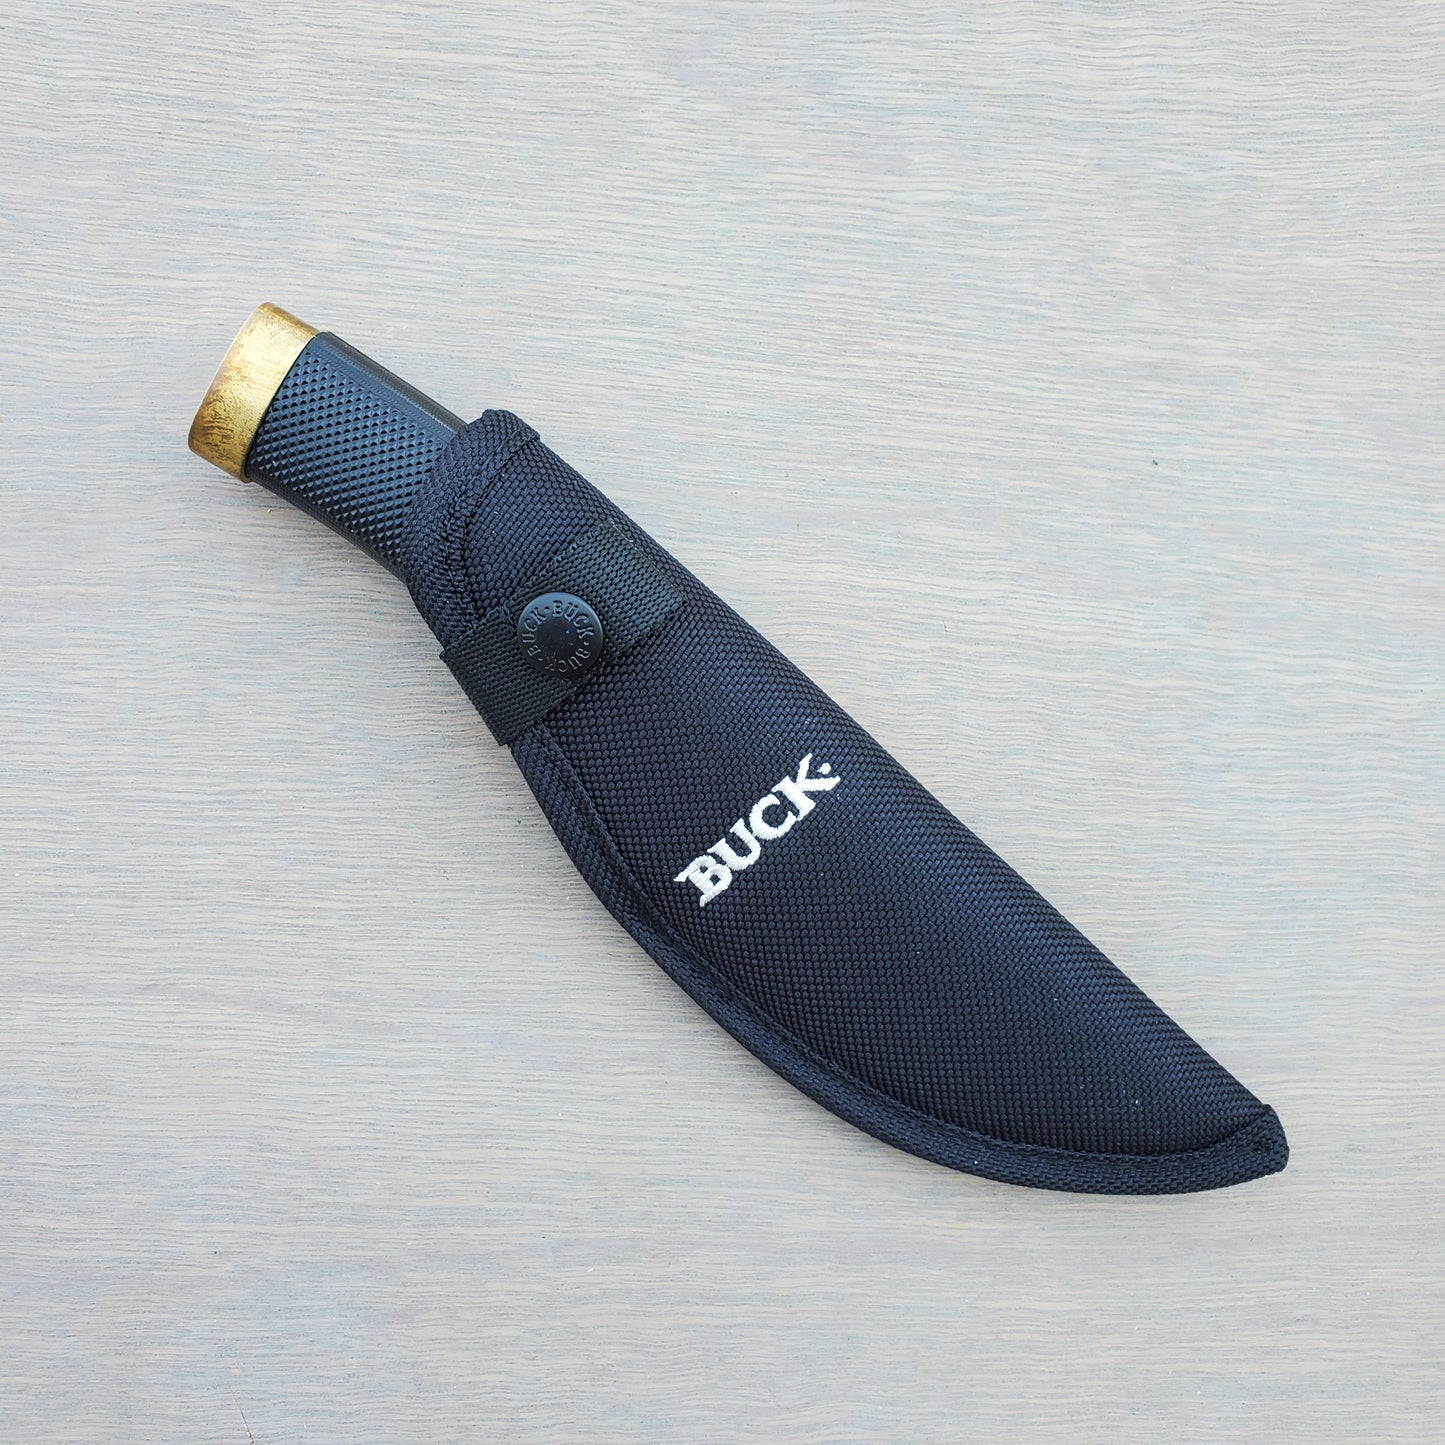 Buck 691 Zipper Skinning Knife Guthook - Rubber Handle